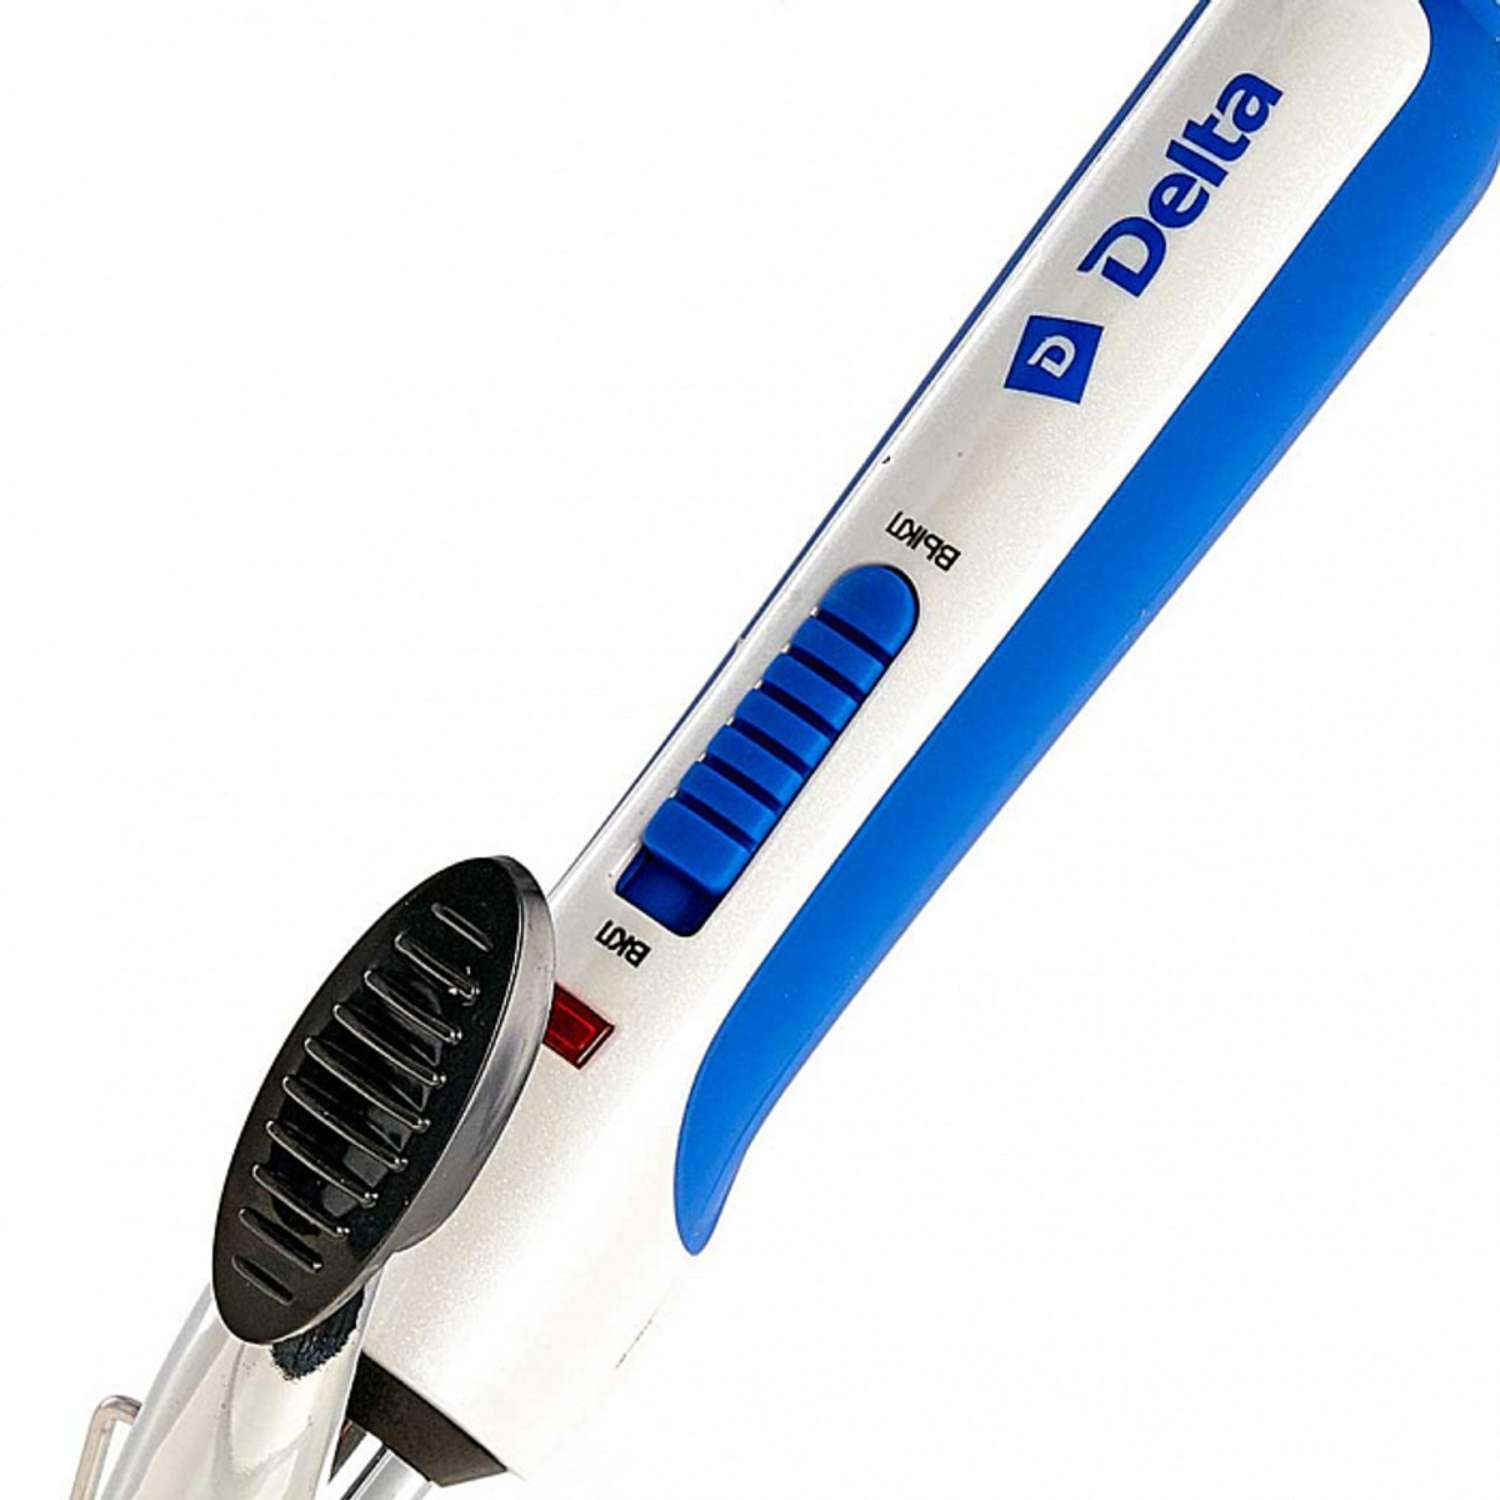 Стайлер для завивки волос Delta DL-0622 белый с синим 25 Вт - фото 3